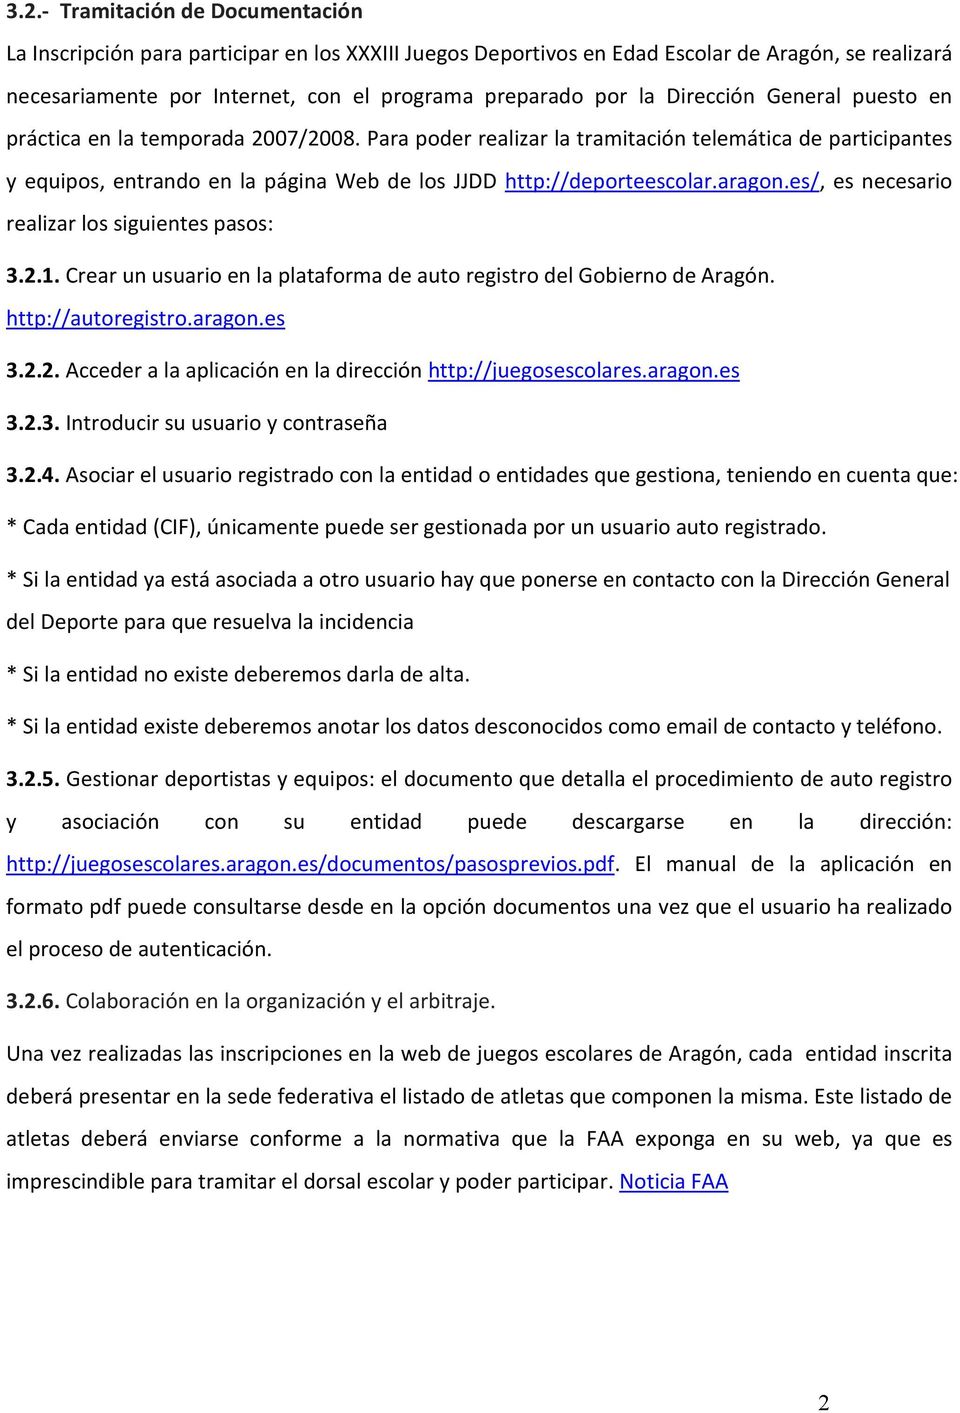 aragon.es/, es necesario realizar los siguientes pasos: 3.2.1. Crear un usuario en la plataforma de auto registro del Gobierno de Aragón. http://autoregistro.aragon.es 3.2.2. Acceder a la aplicación en la dirección http://juegosescolares.